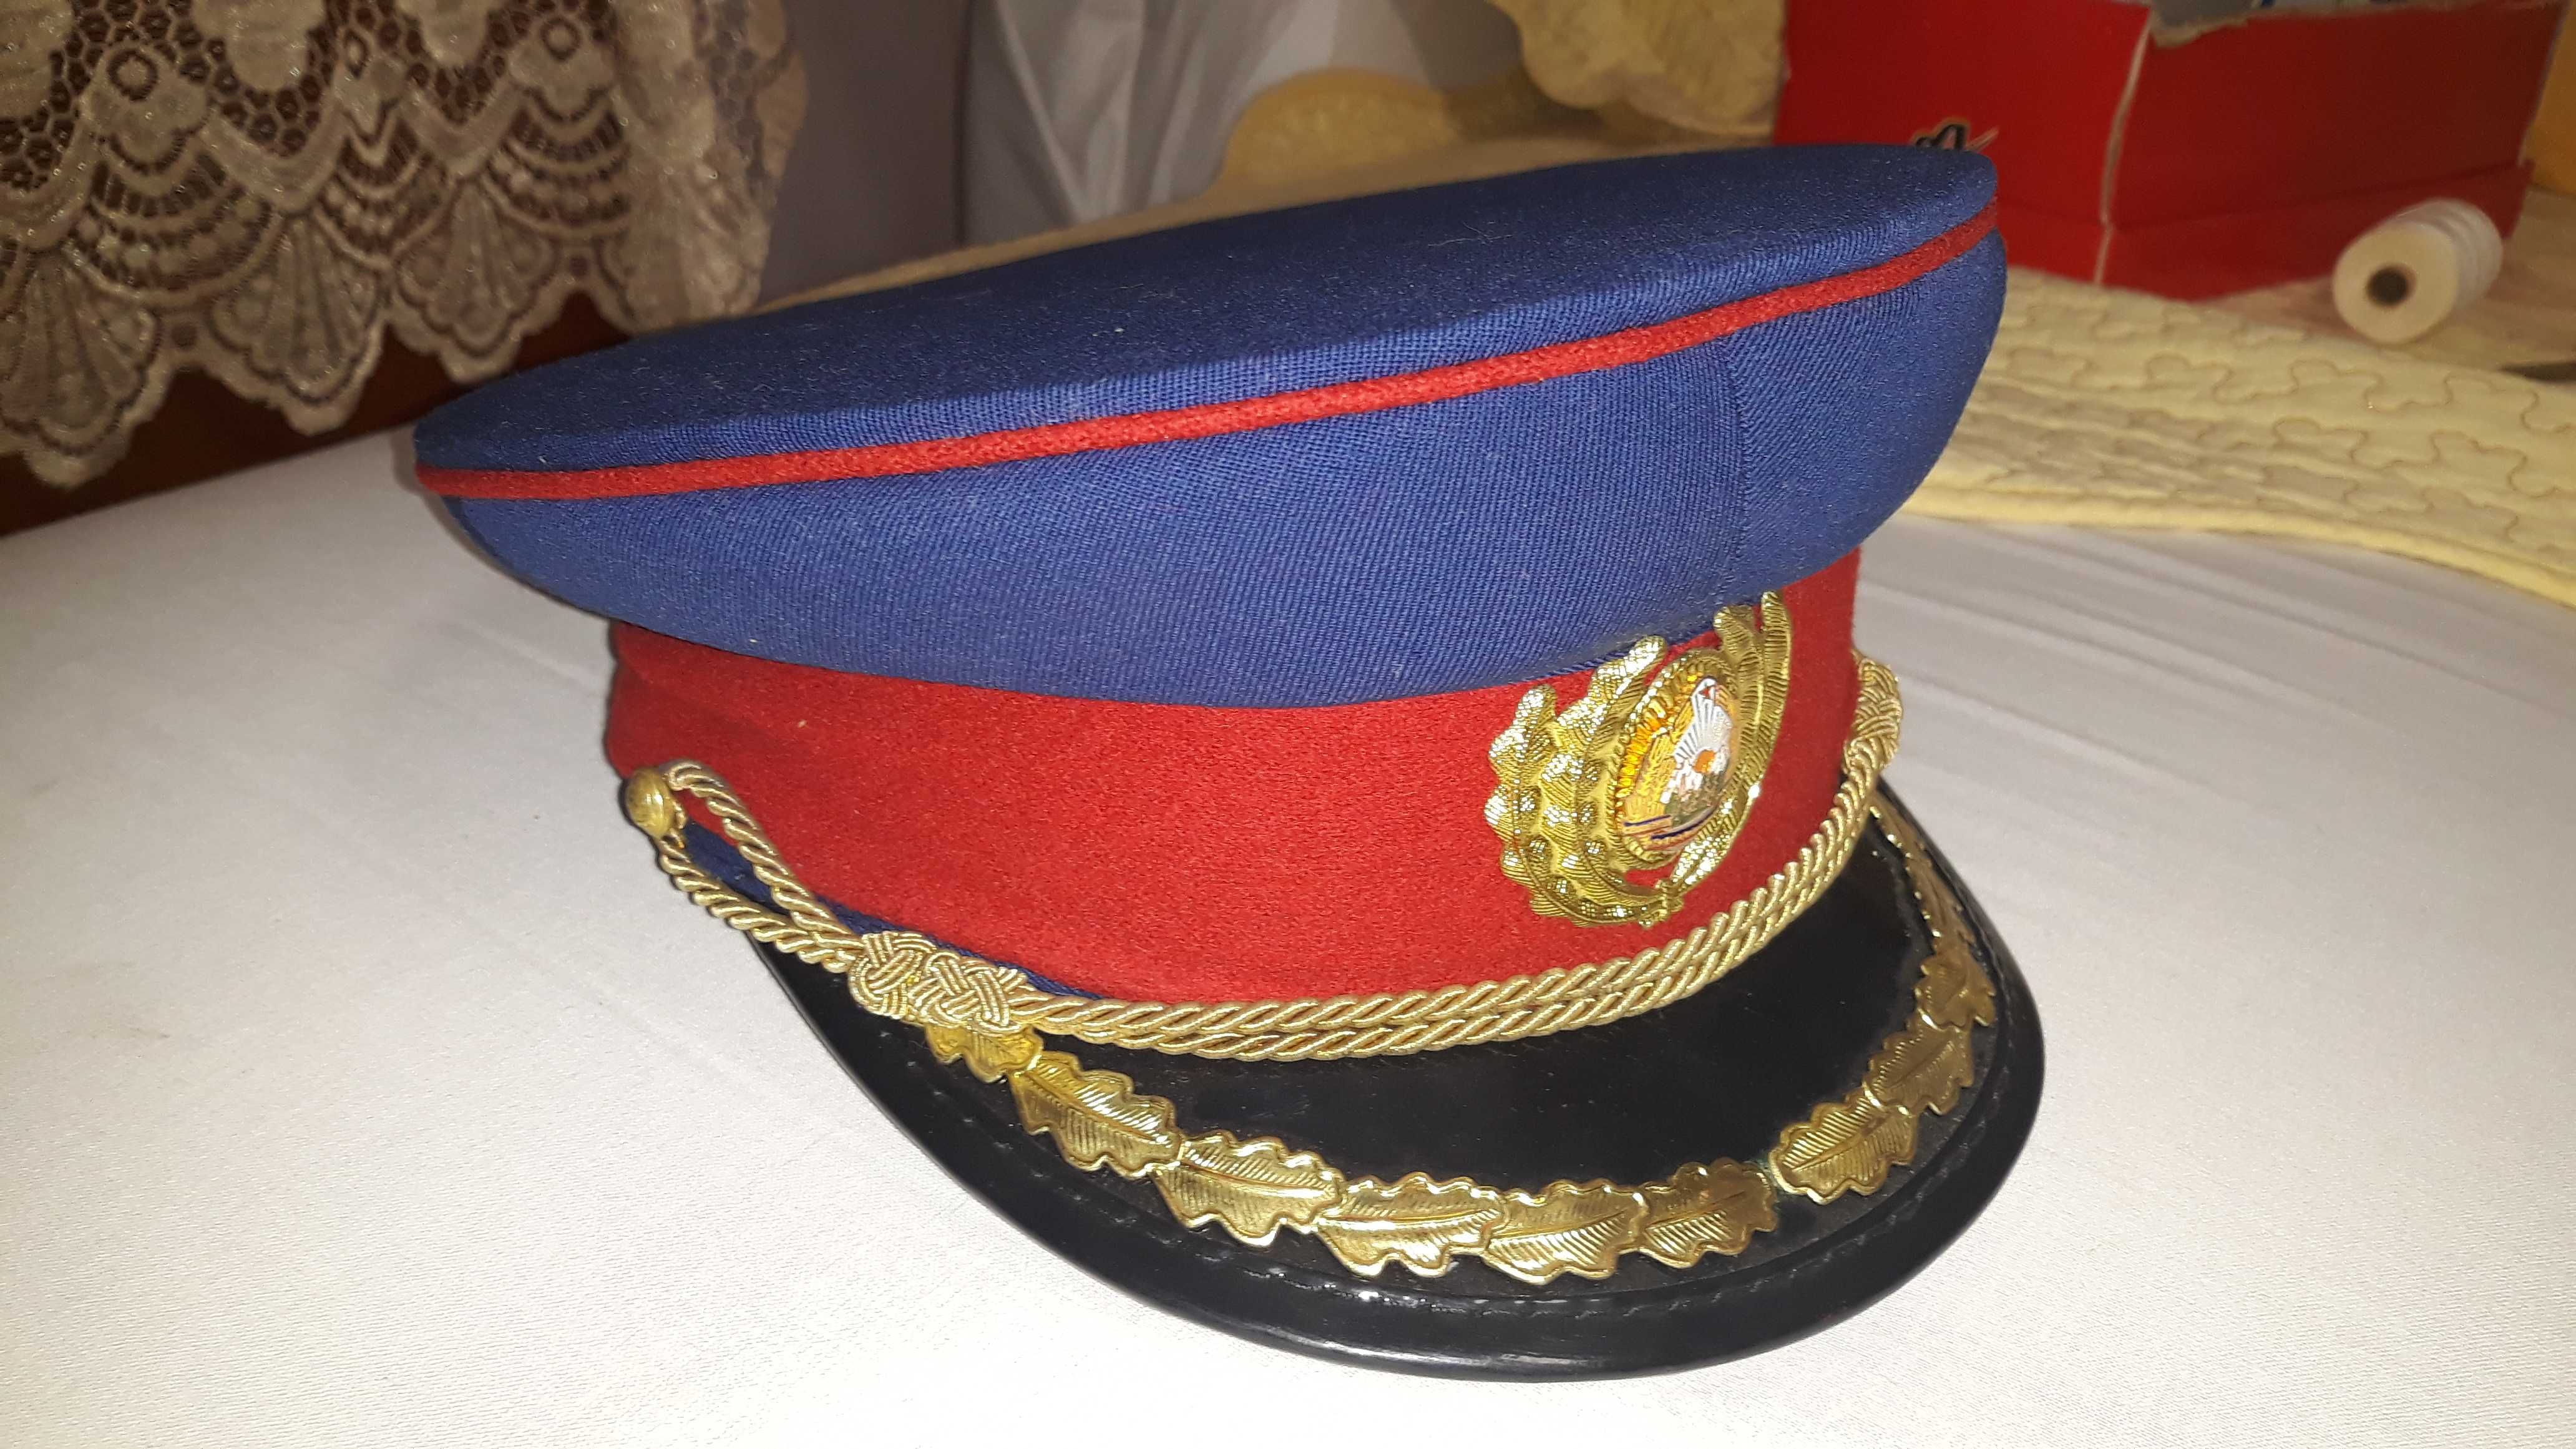 Costum de ceremonie / parada ofiter ( colonel ) perioada comunista